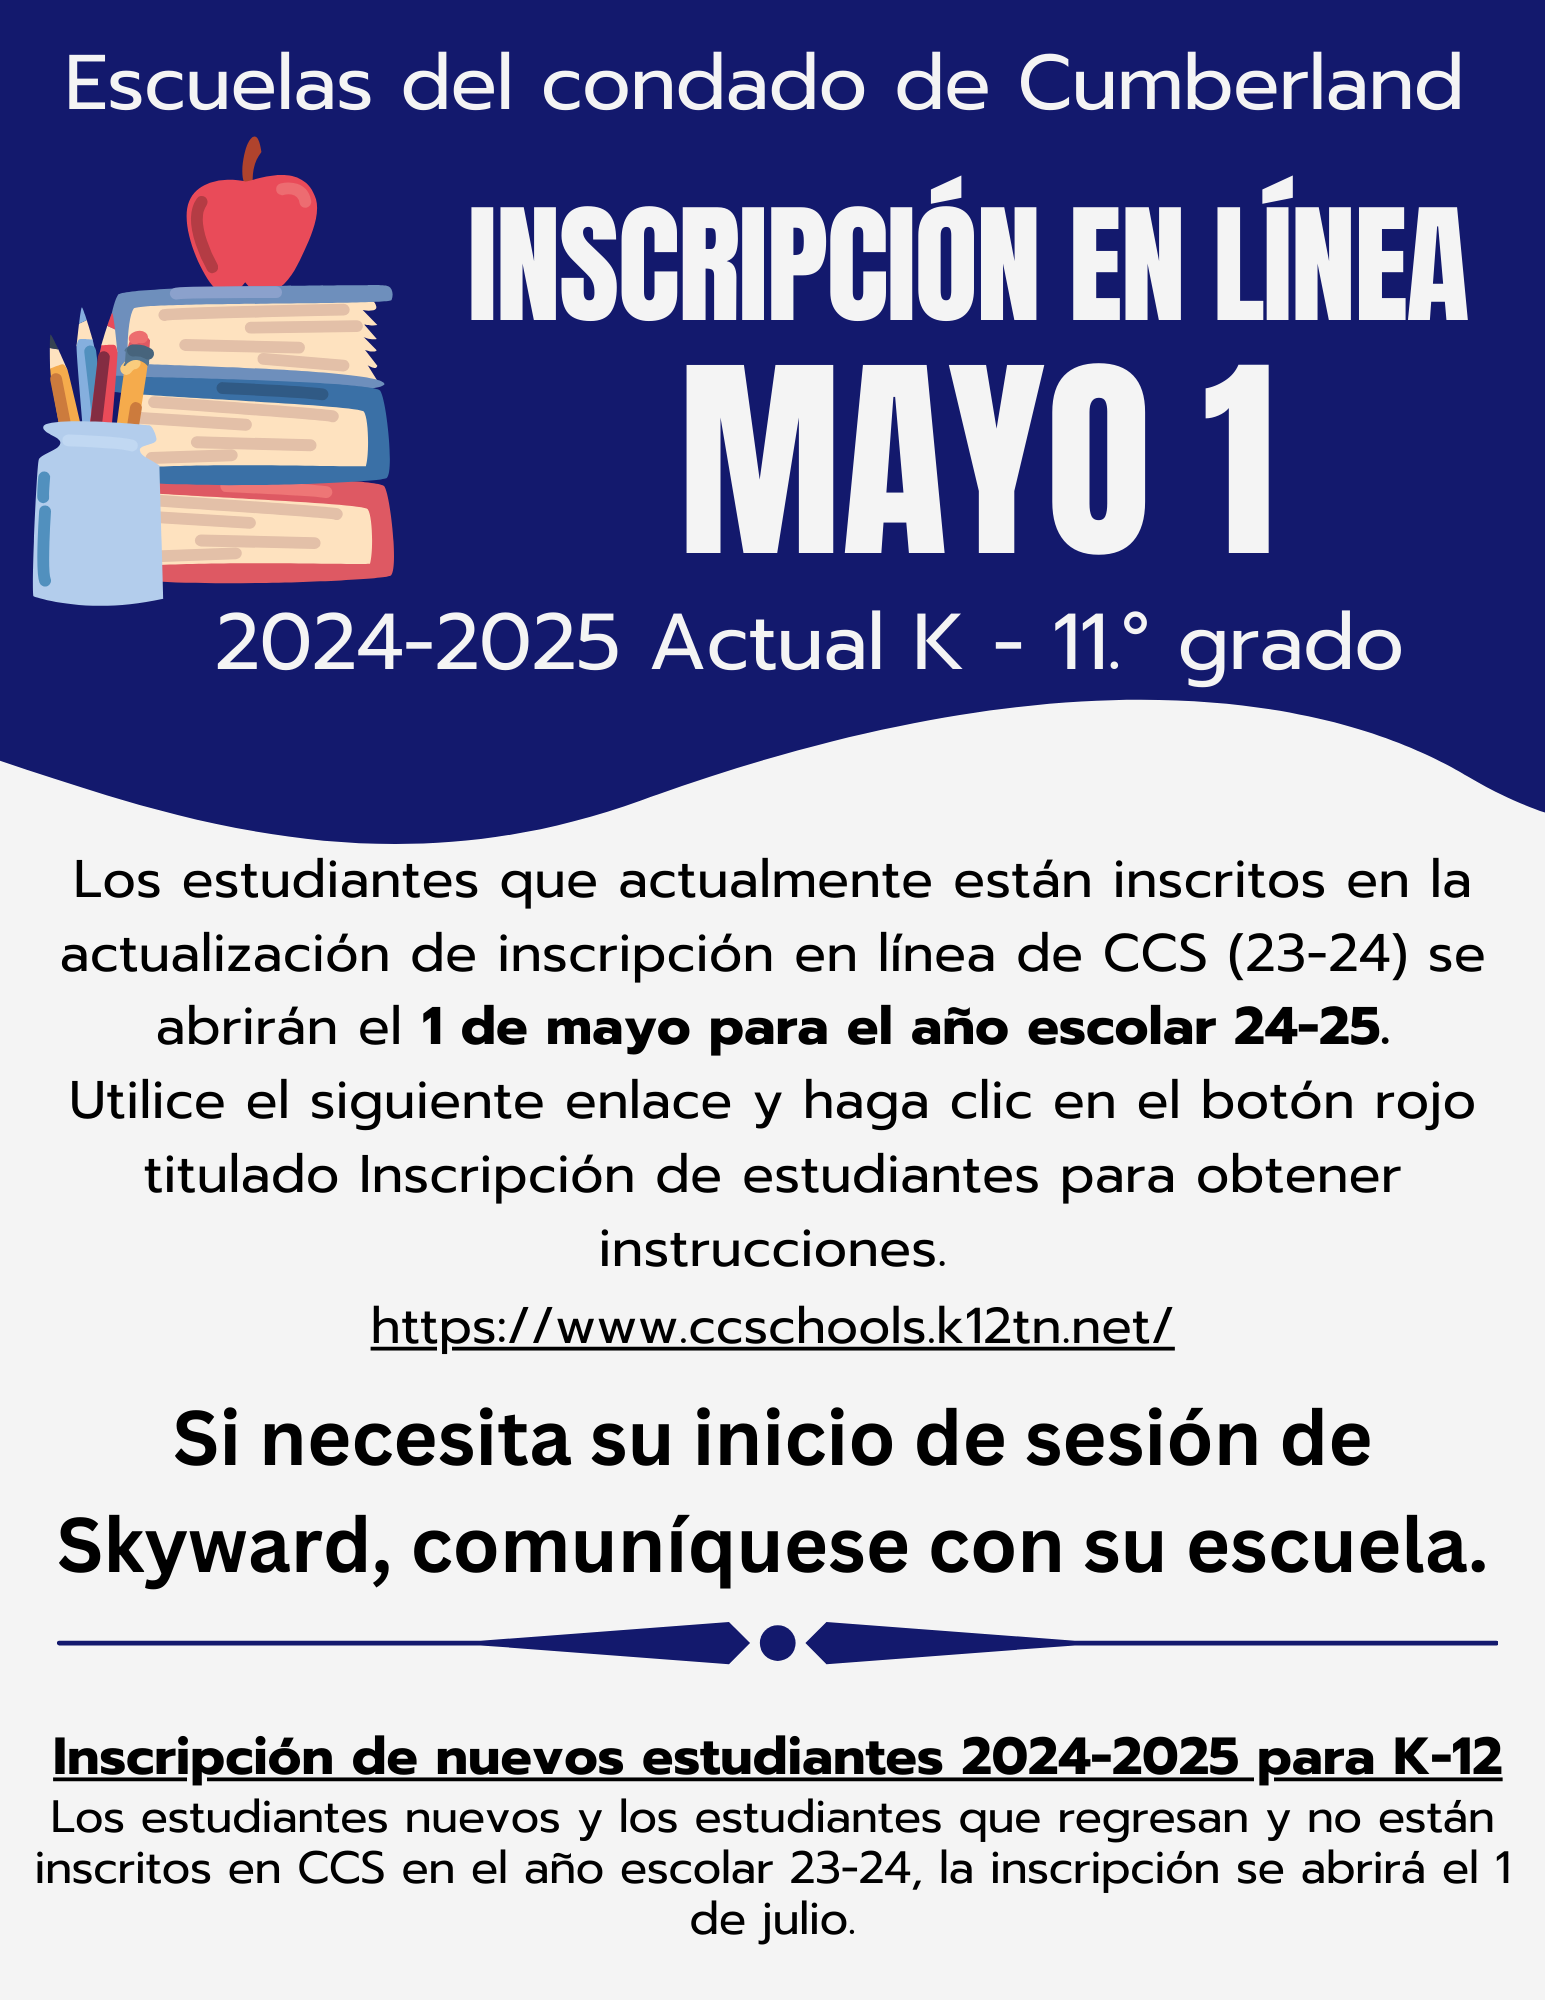 Escuelas del condado de Cumberland  inscripcion en linea  Mayo 1  2024-2025  Actual K - 11 grado